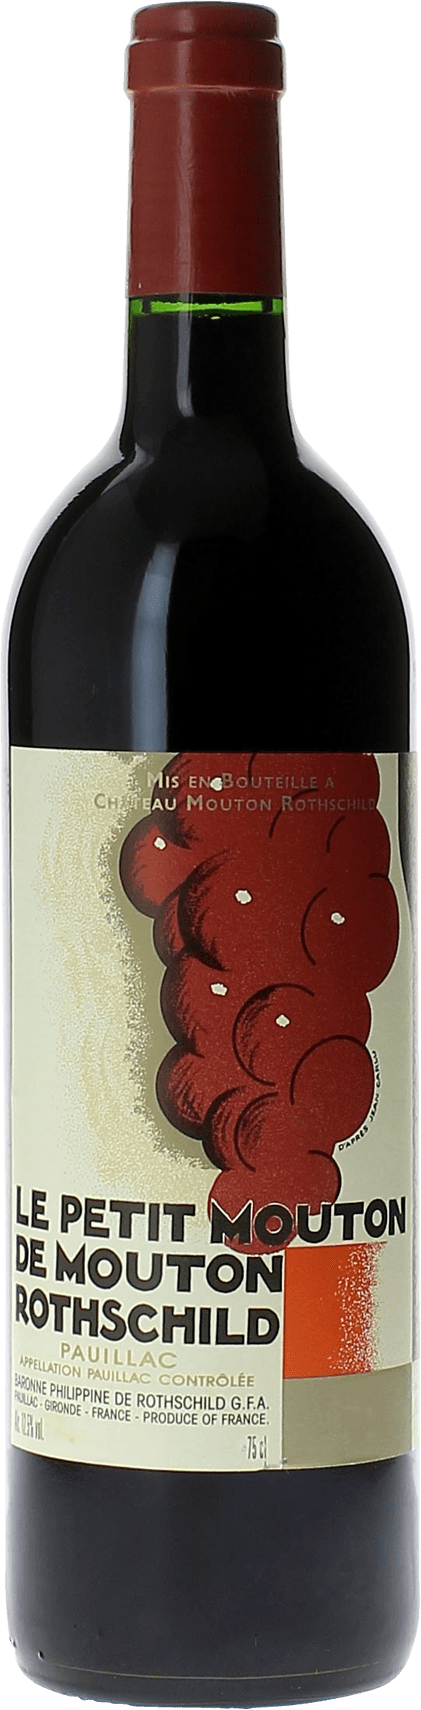 Petit mouton 1993 2nd vin de Mouton Rothschild Pauillac, Bordeaux rouge